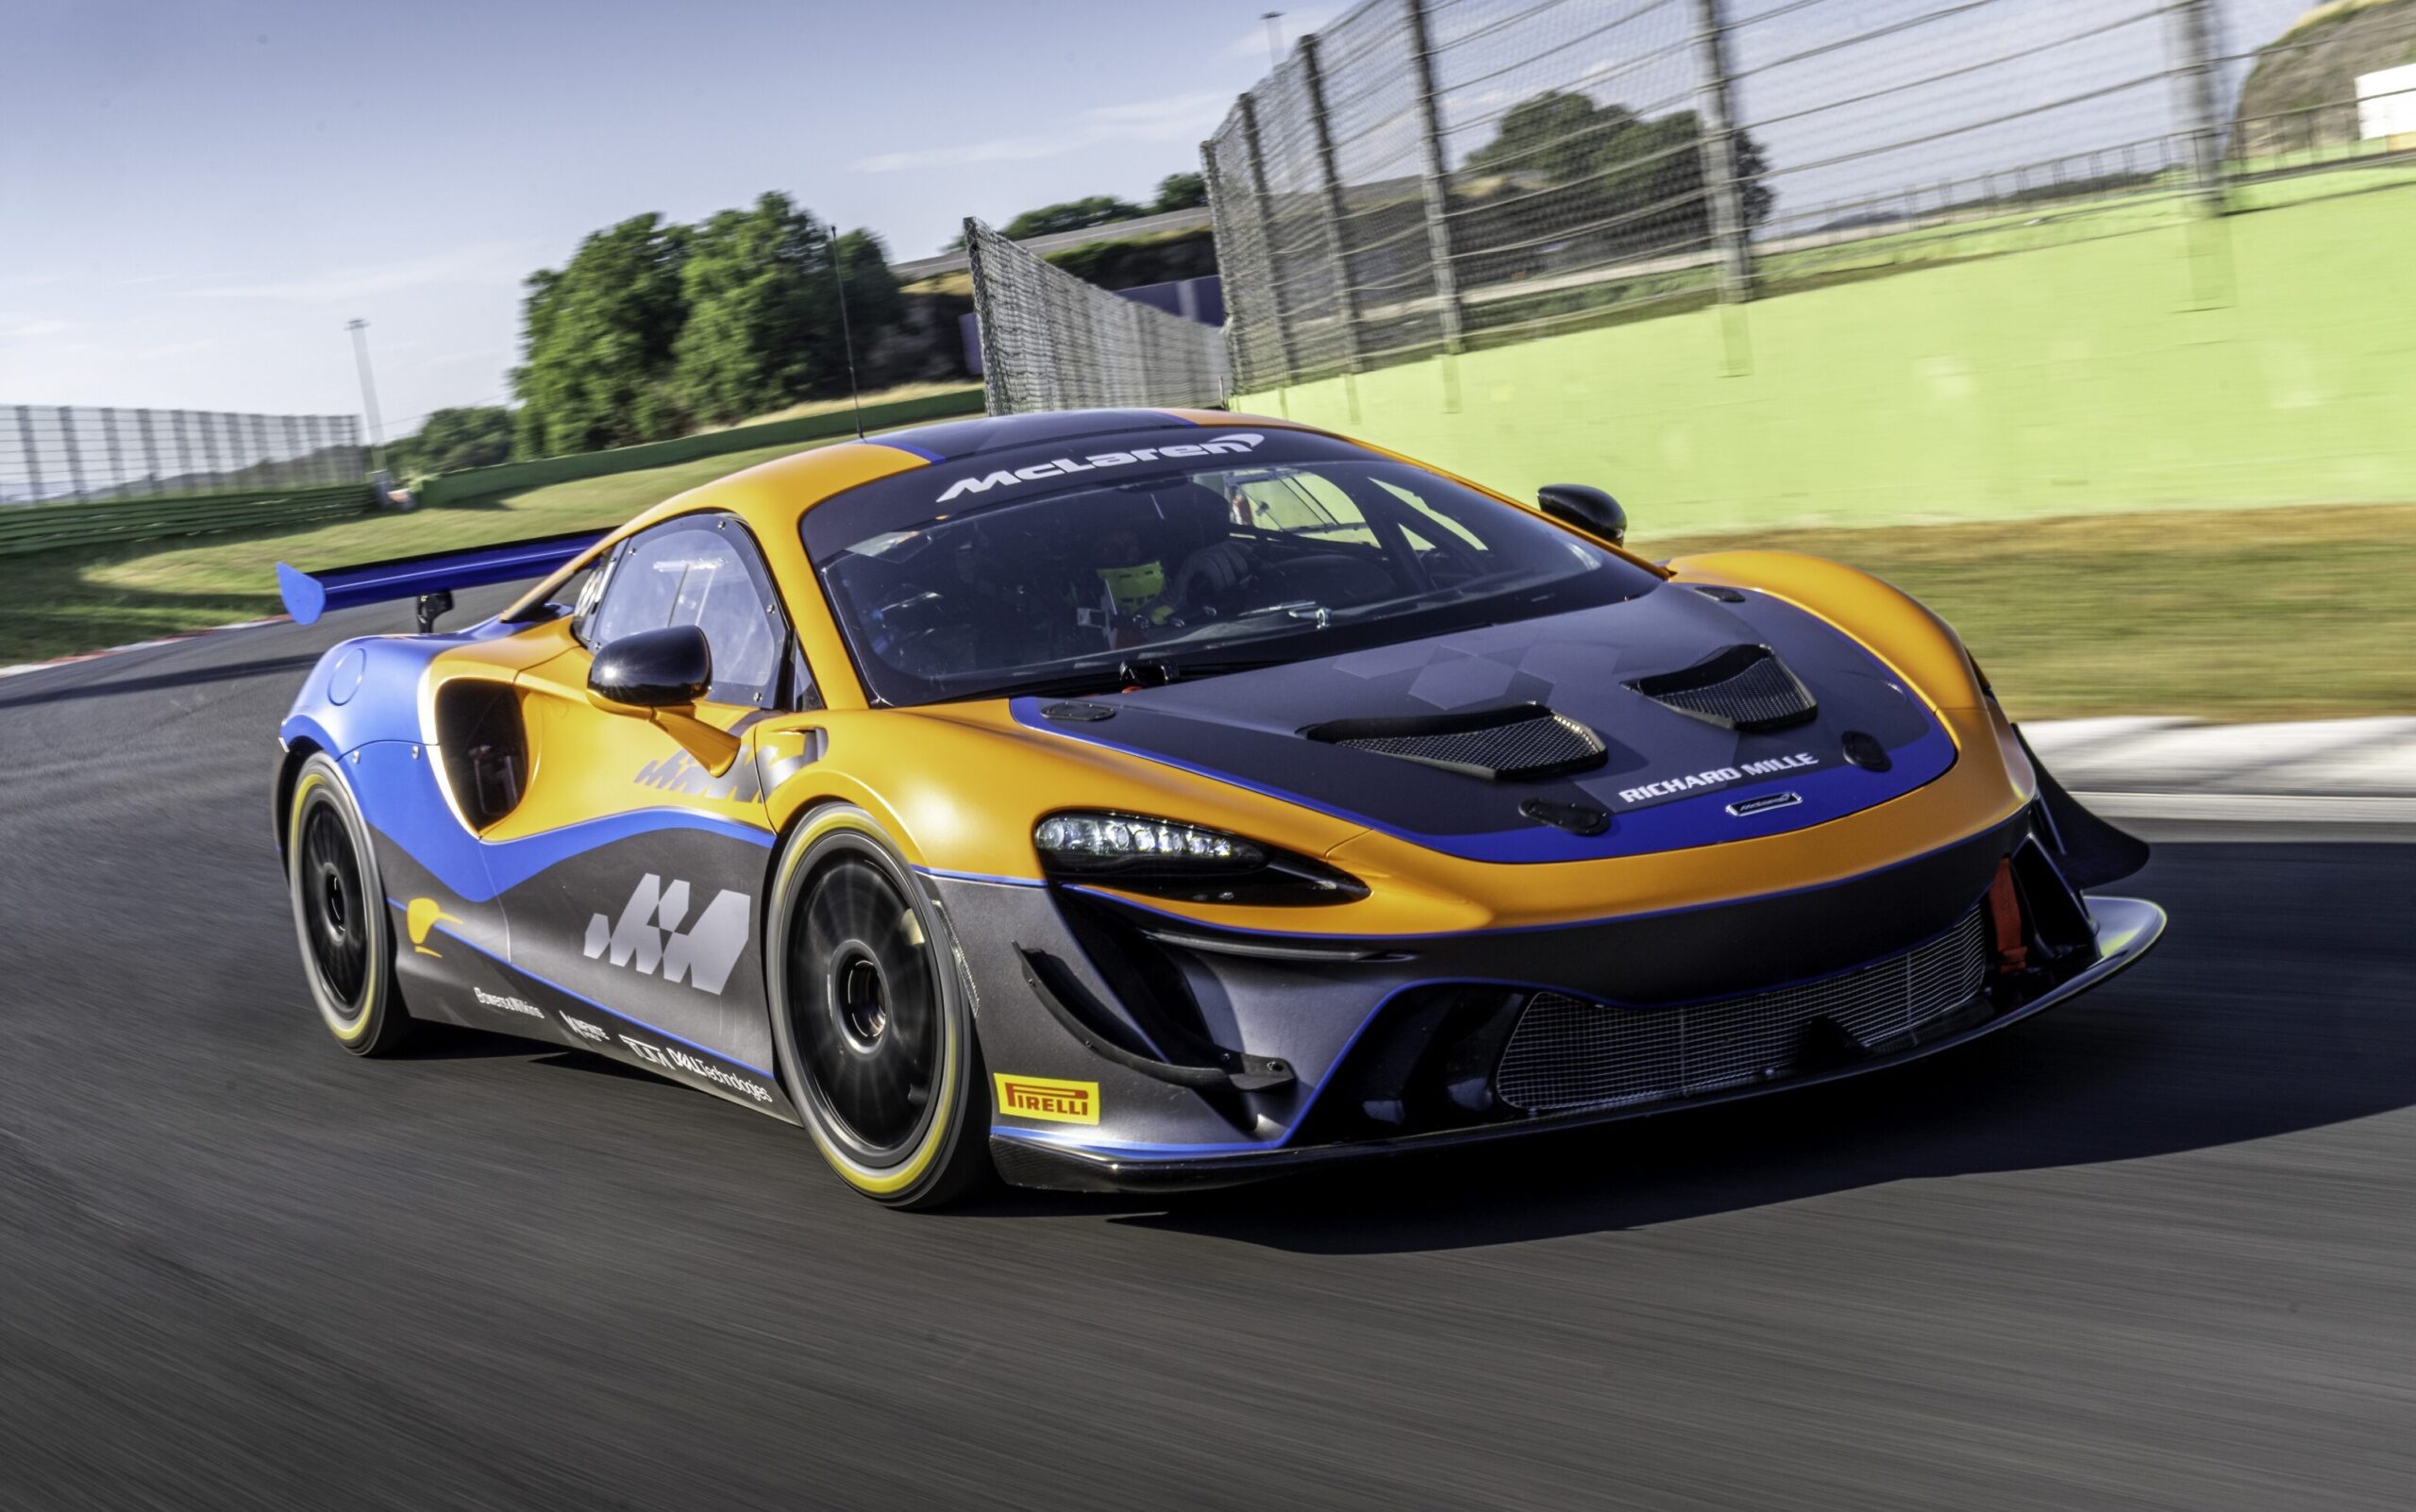 McLaren Artura GT4 race car on track